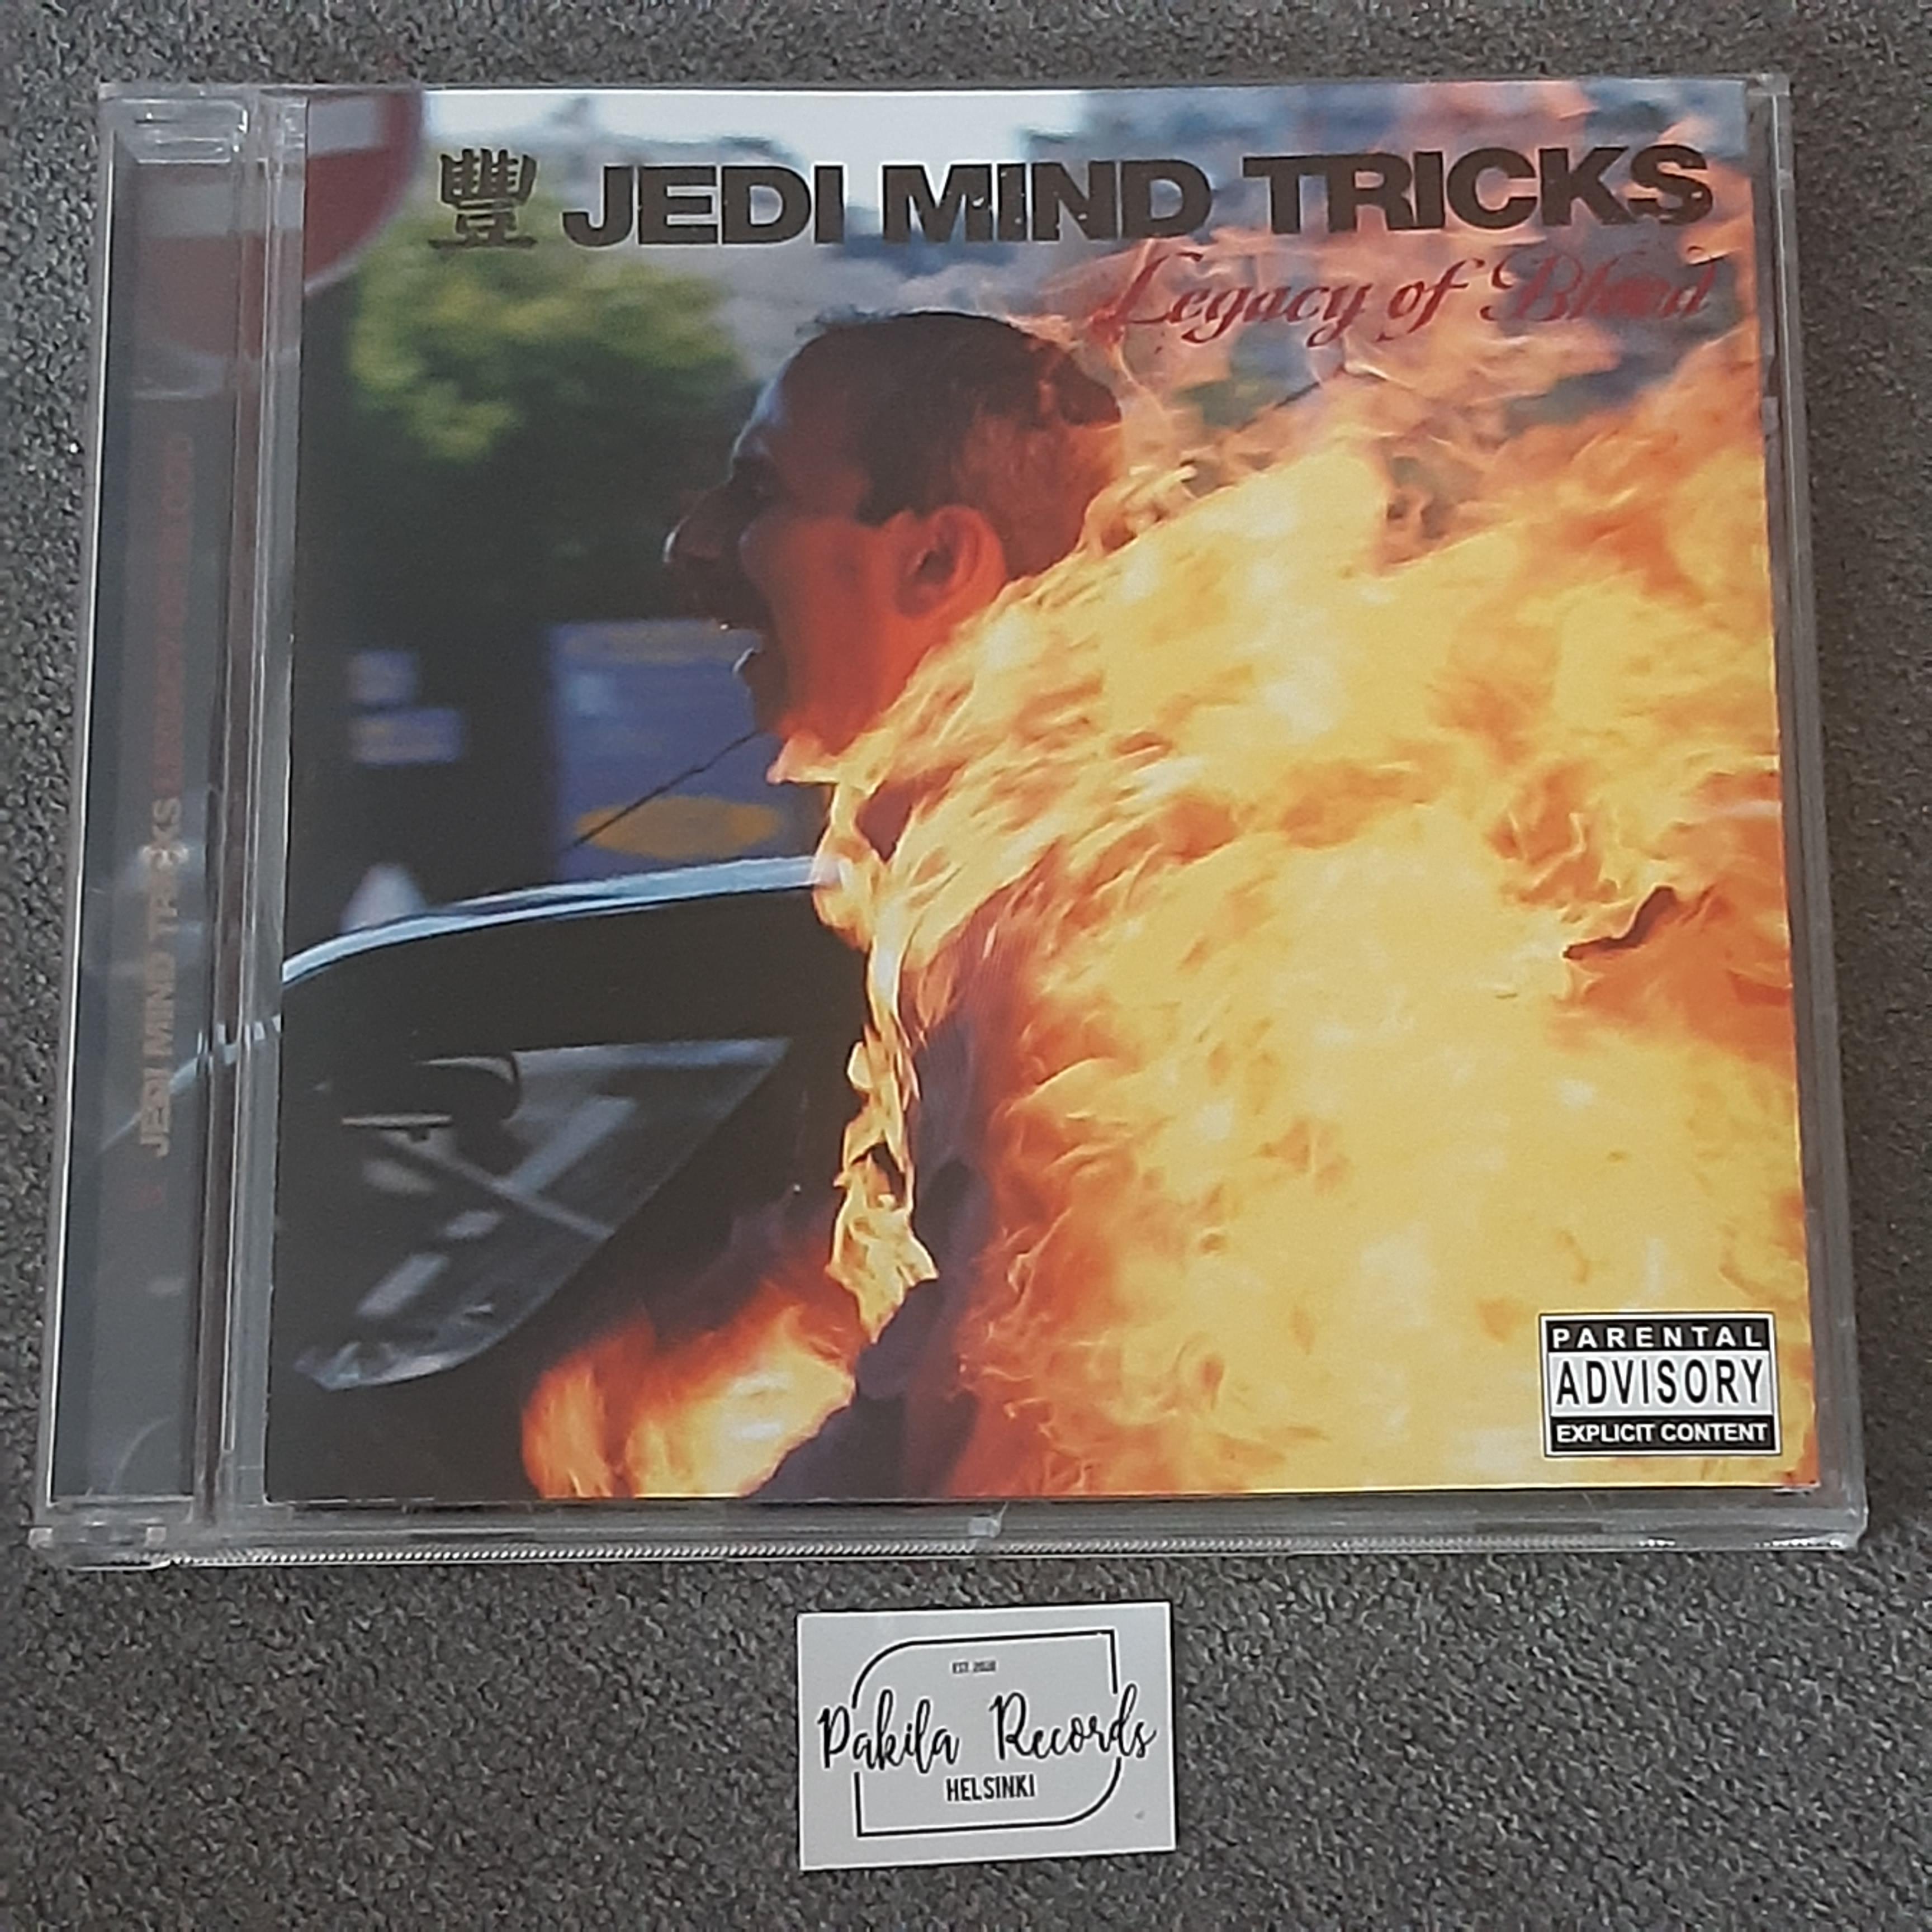 Jedi Mind Tricks - Legacy Of Blood - CD (käytetty)